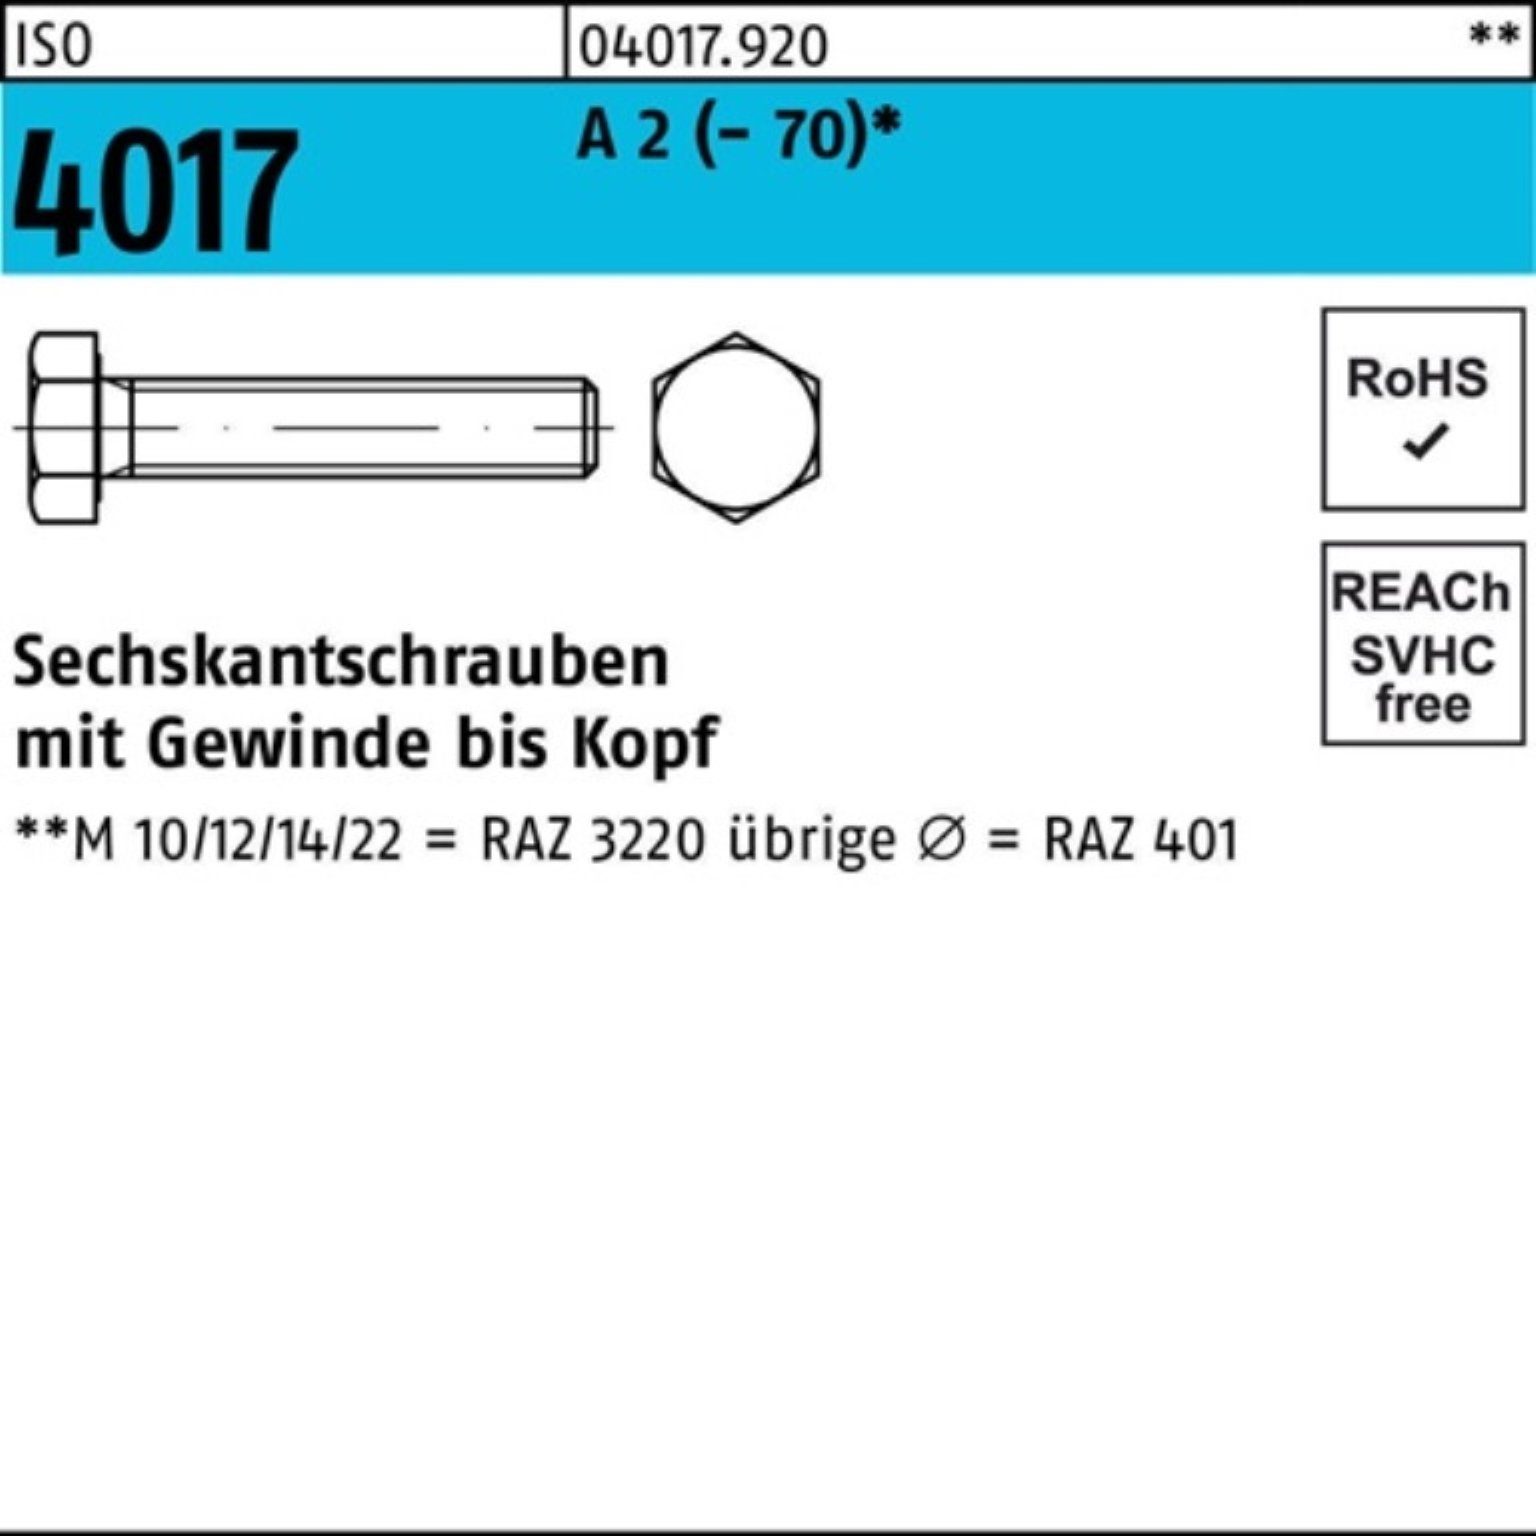 2 Pack Bufab A VG 100er 55 Stück Sechskantschraube 4017 Sechskantschraube ISO (70) 25 M20x